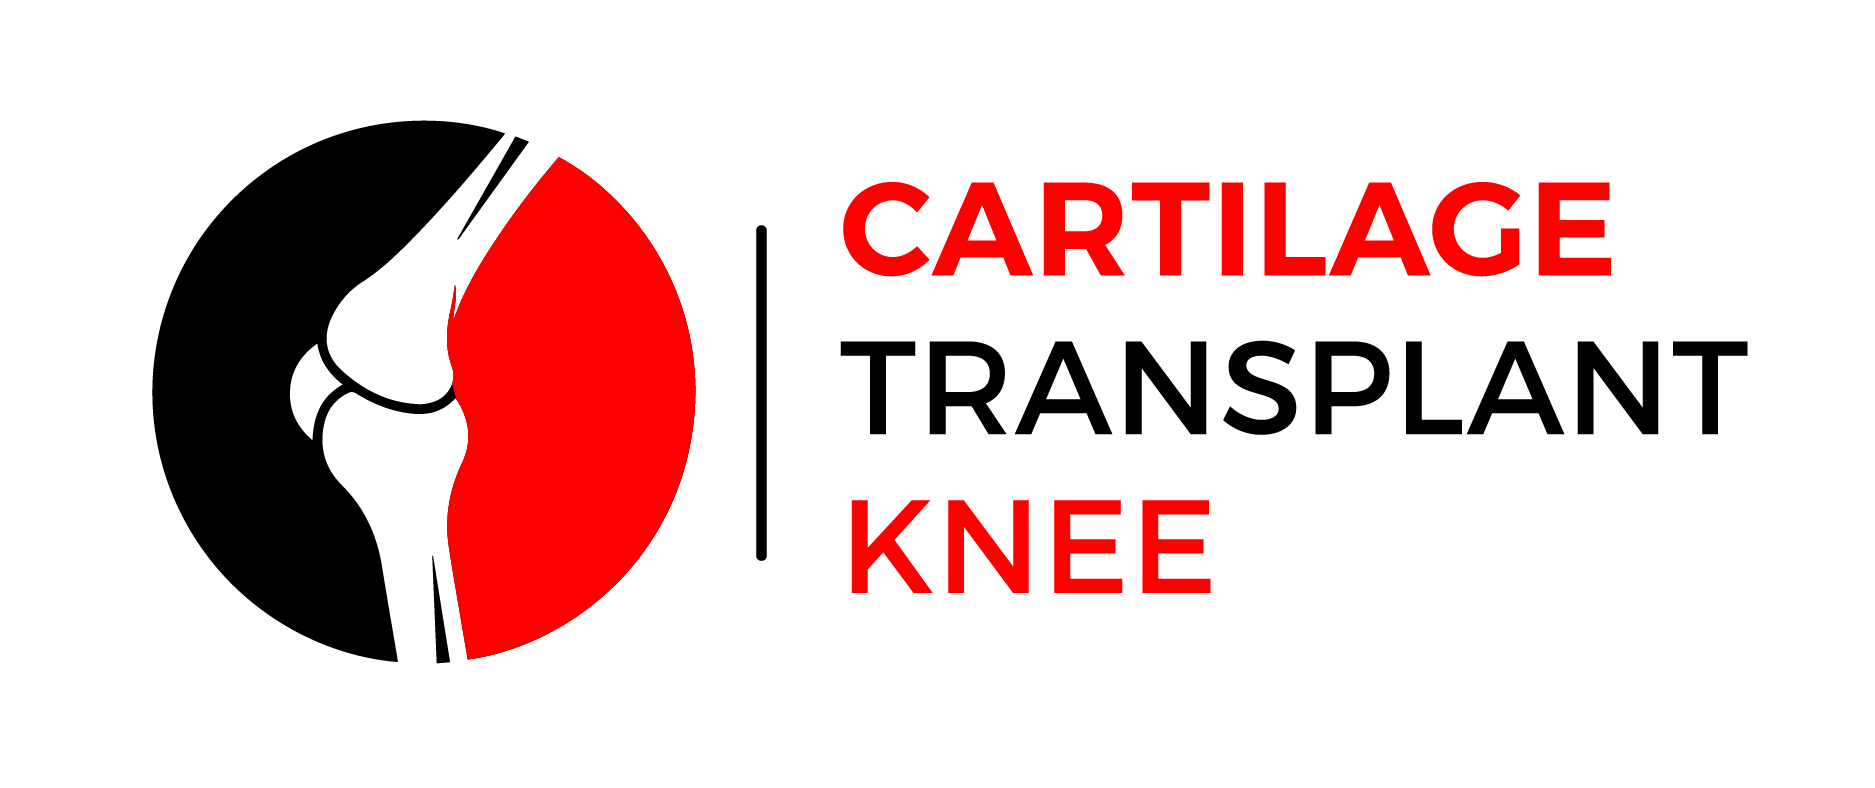 cartilage transplantknee